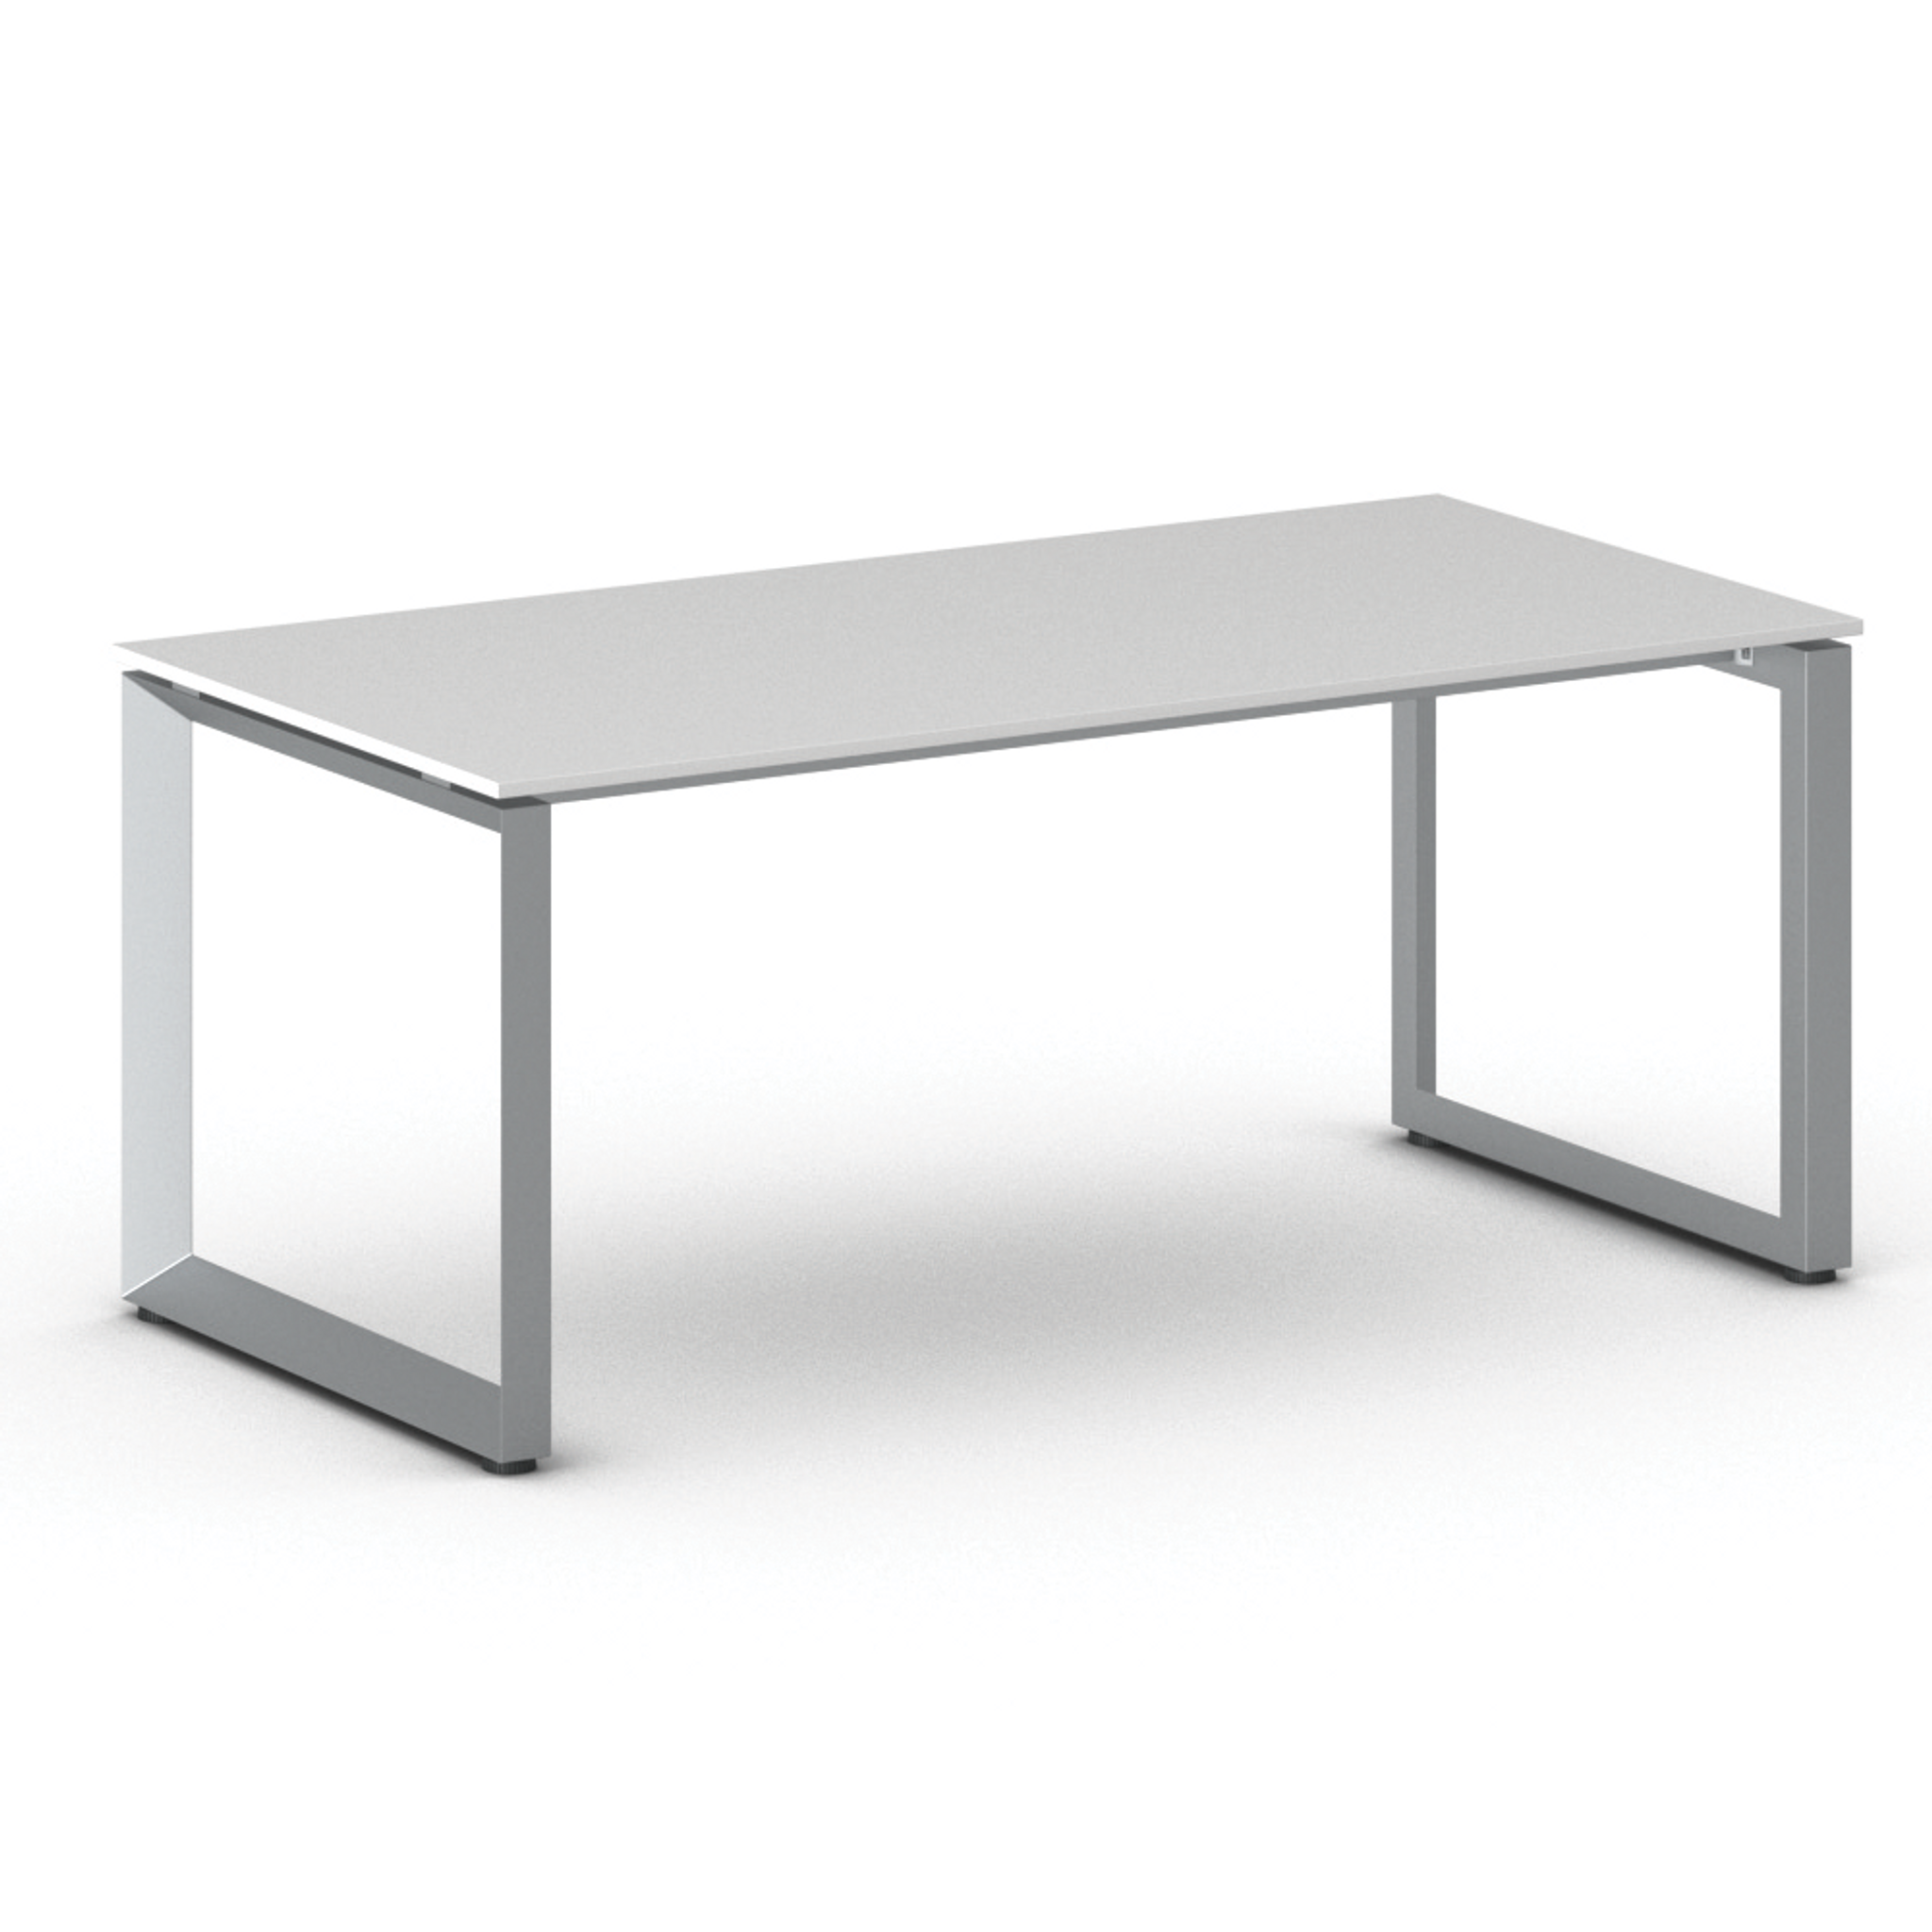 Stół konferencyjny PRIMO INSPIRE 1800 x 900 x 750 mm, biały